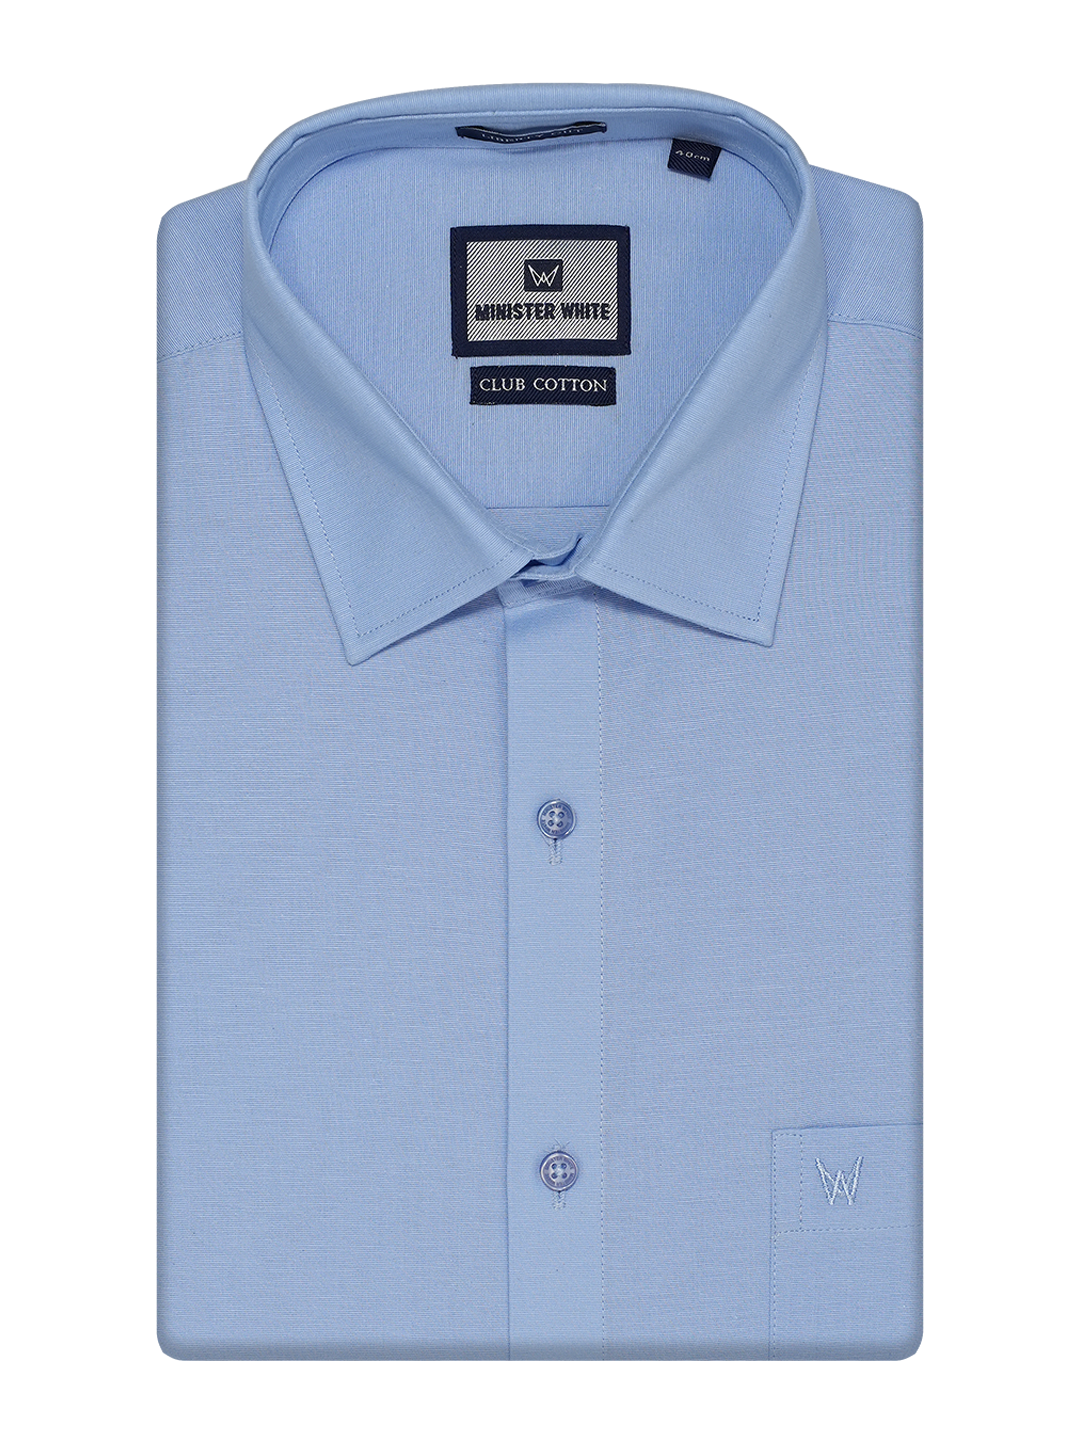 Mens Cotton Regular Fit Sky Blue Colour Shirt Club Cotton